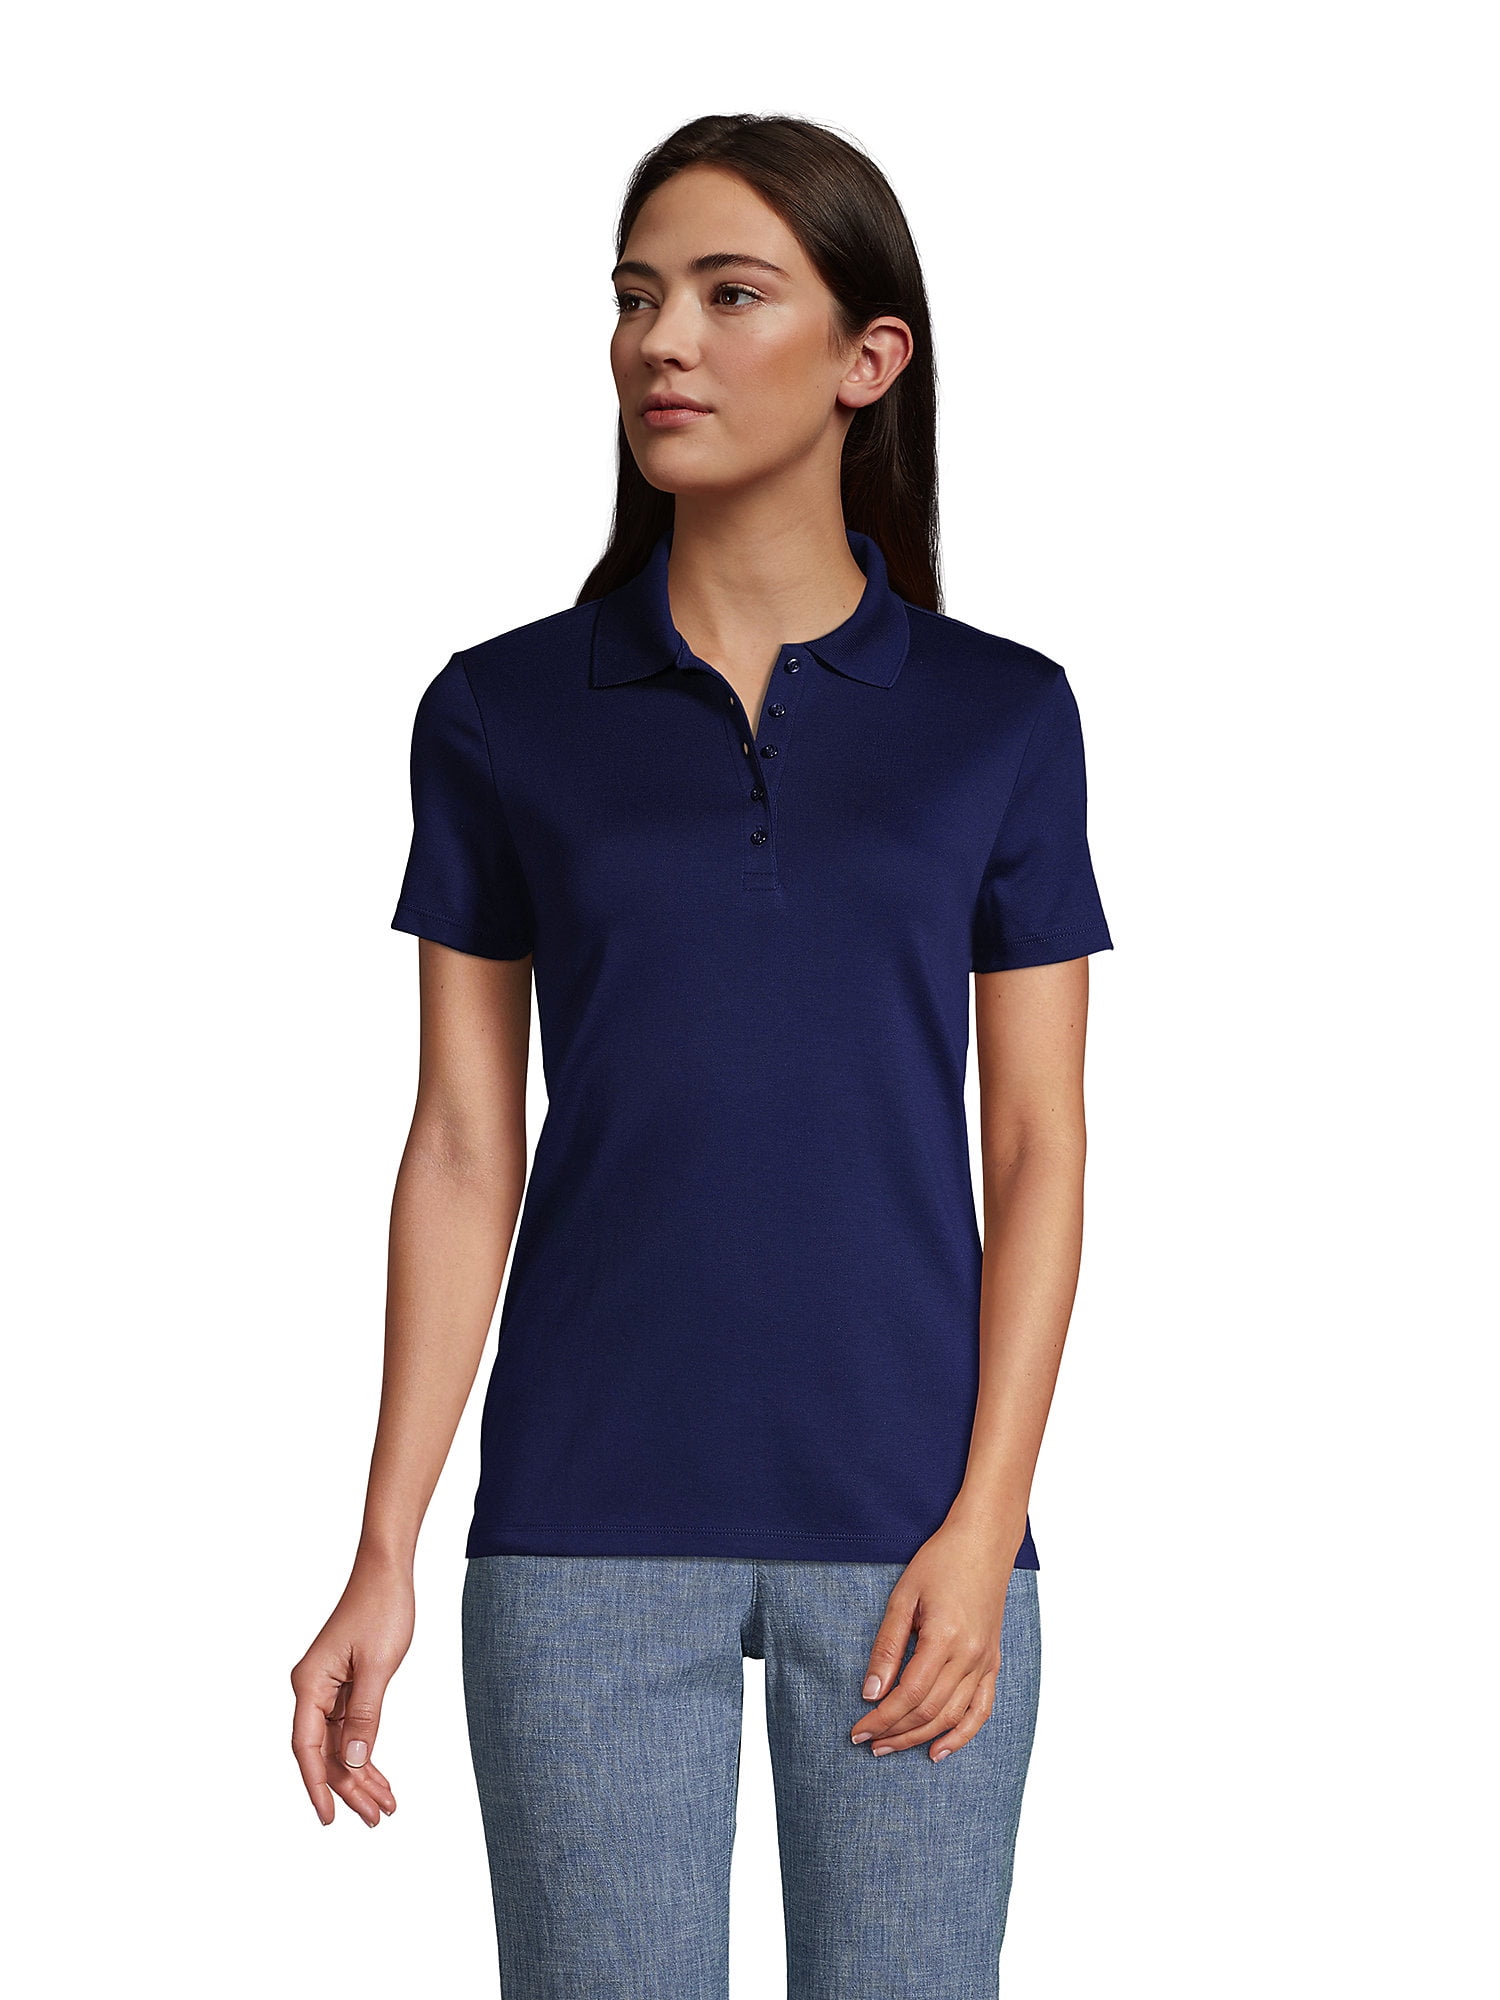 CLOVERY Women's Sportswear 2-Button Placket Polo Short Sleeve Shirt (S-3XL) 